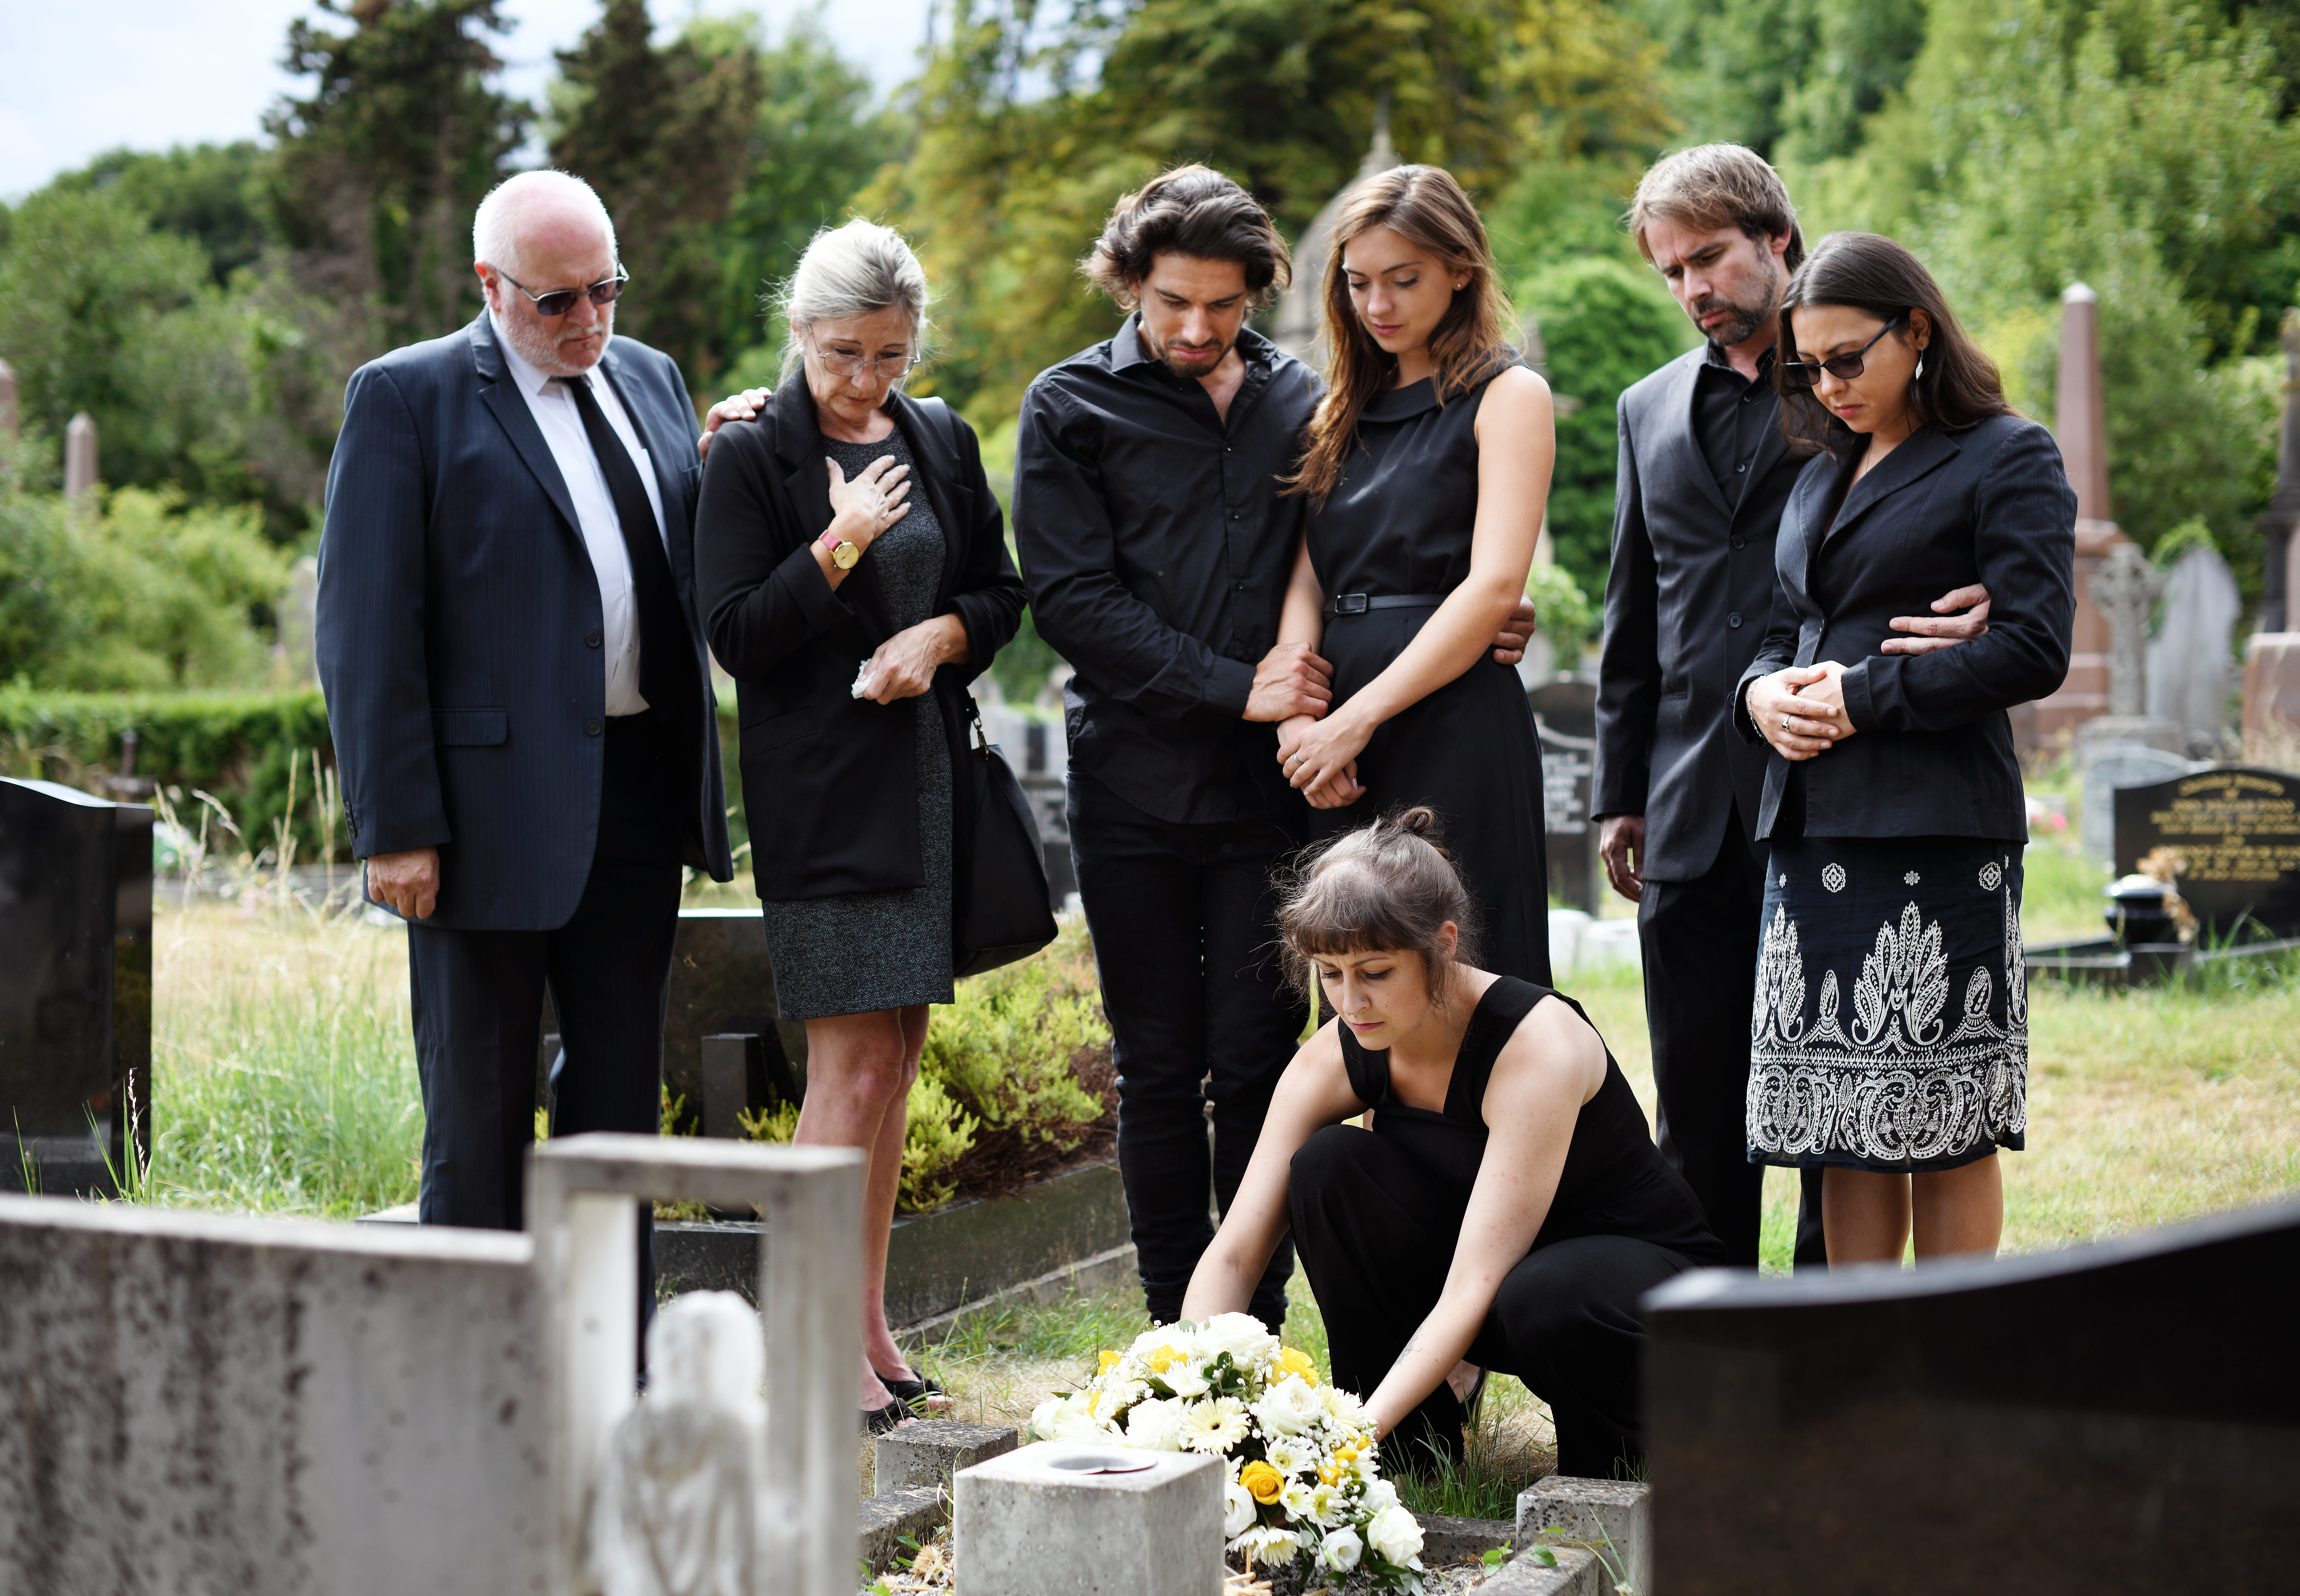 Familia alrededor de una tumba en un cementerio | Foto: Shutterstock